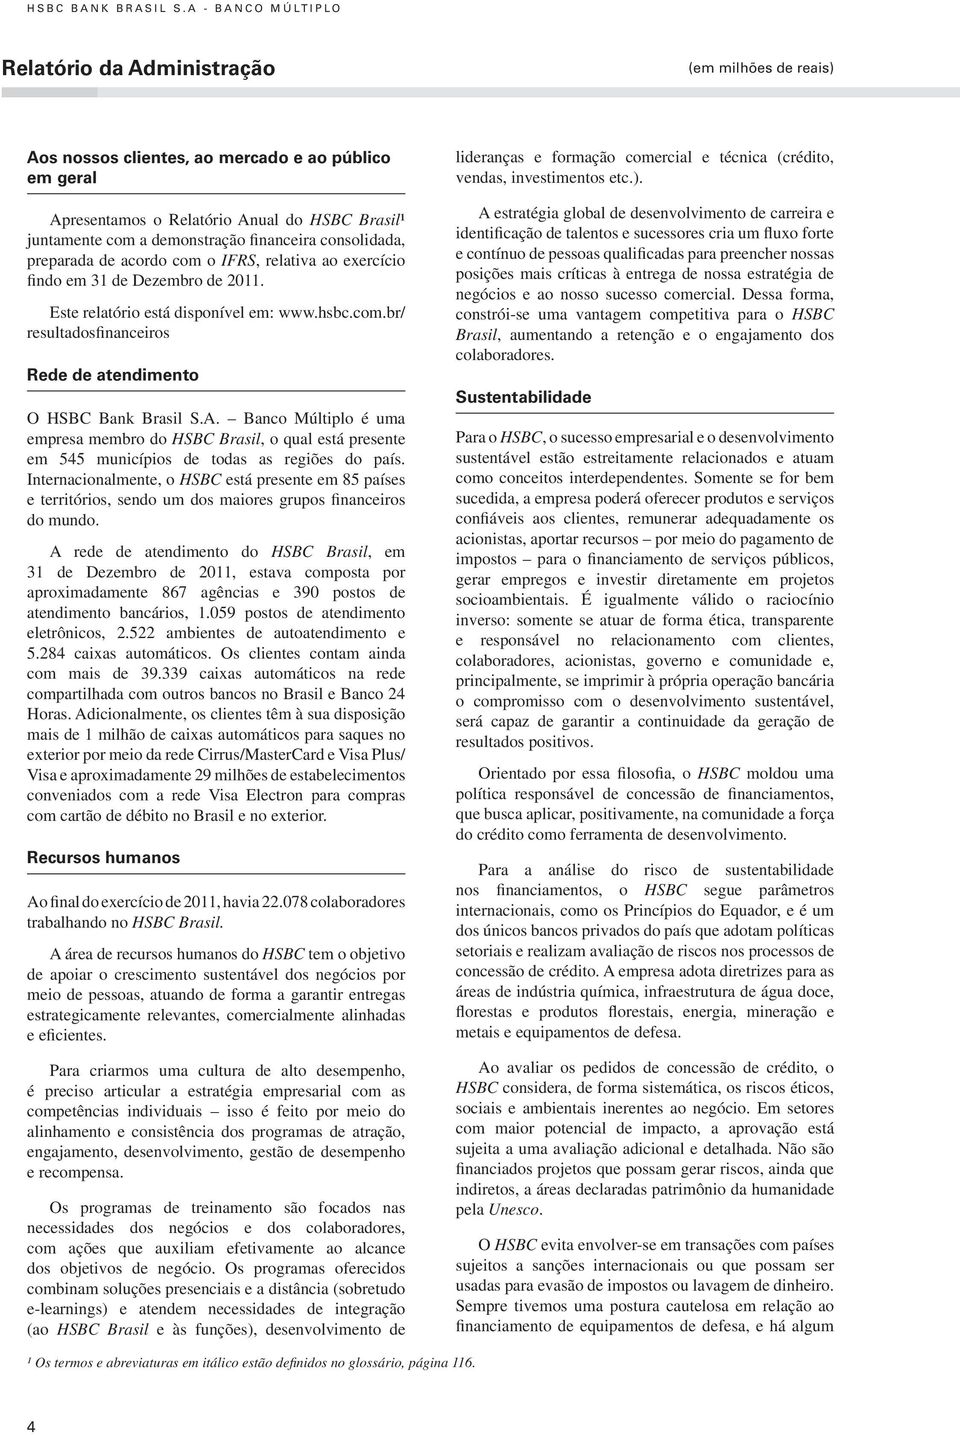 Relatório Anual do HSBC Brasil¹ juntamente com a demonstração financeira consolidada, preparada de acordo com o IFRS, relativa ao exercício findo em 31 de Dezembro de 2011.